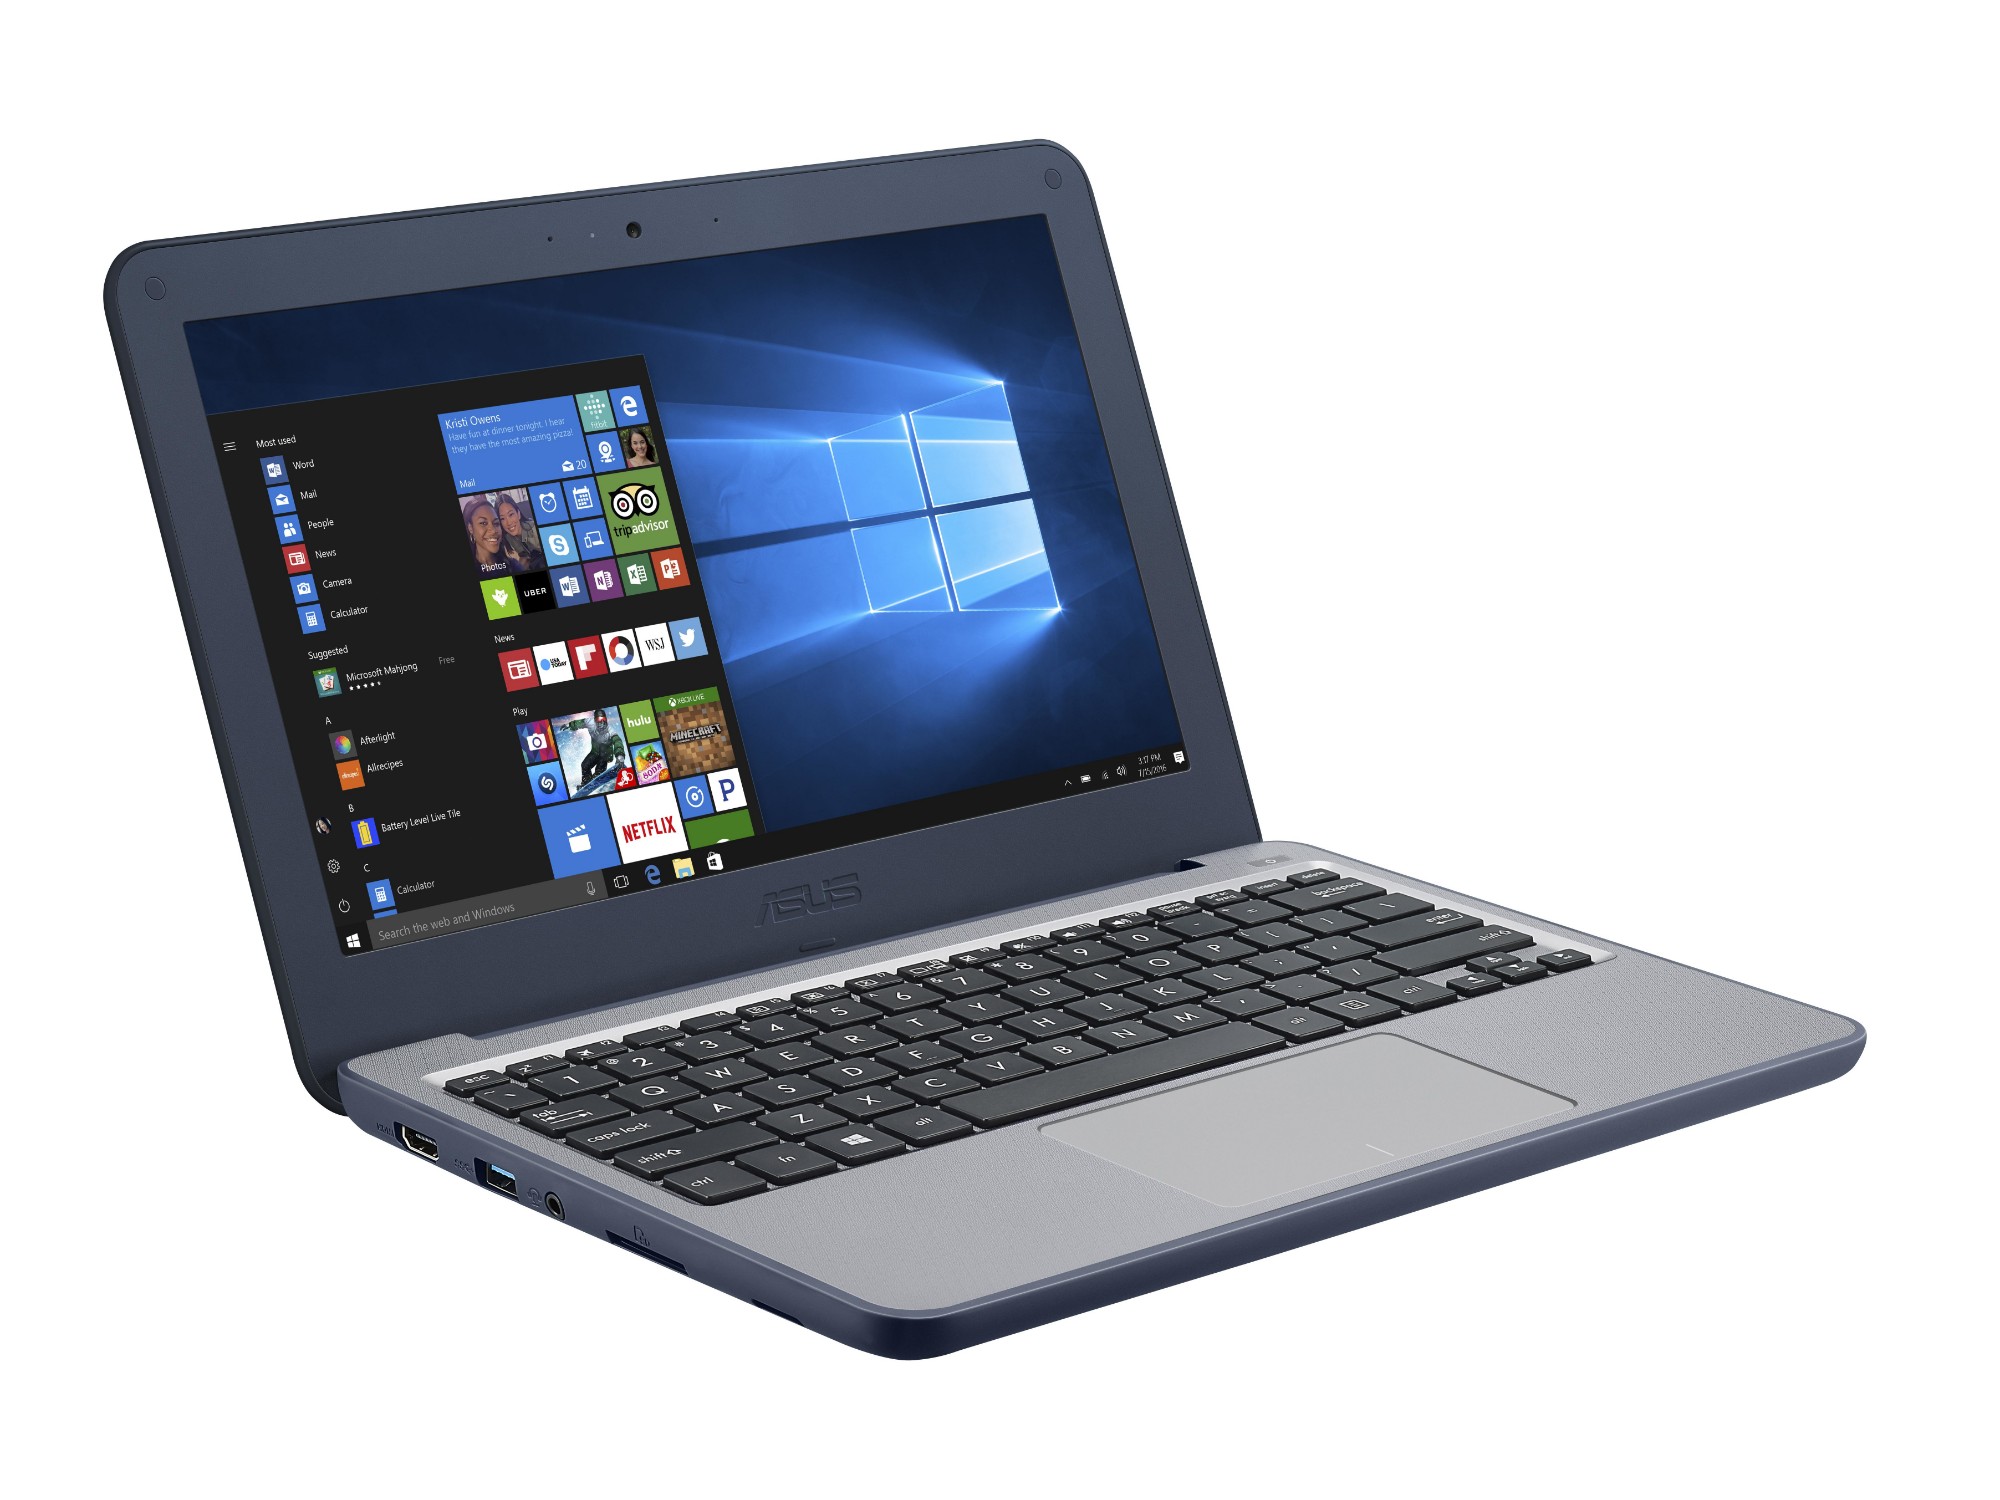  ASUS  VivoBook E201NA GJ008T OSS notebook Blue 29 5 cm 11 